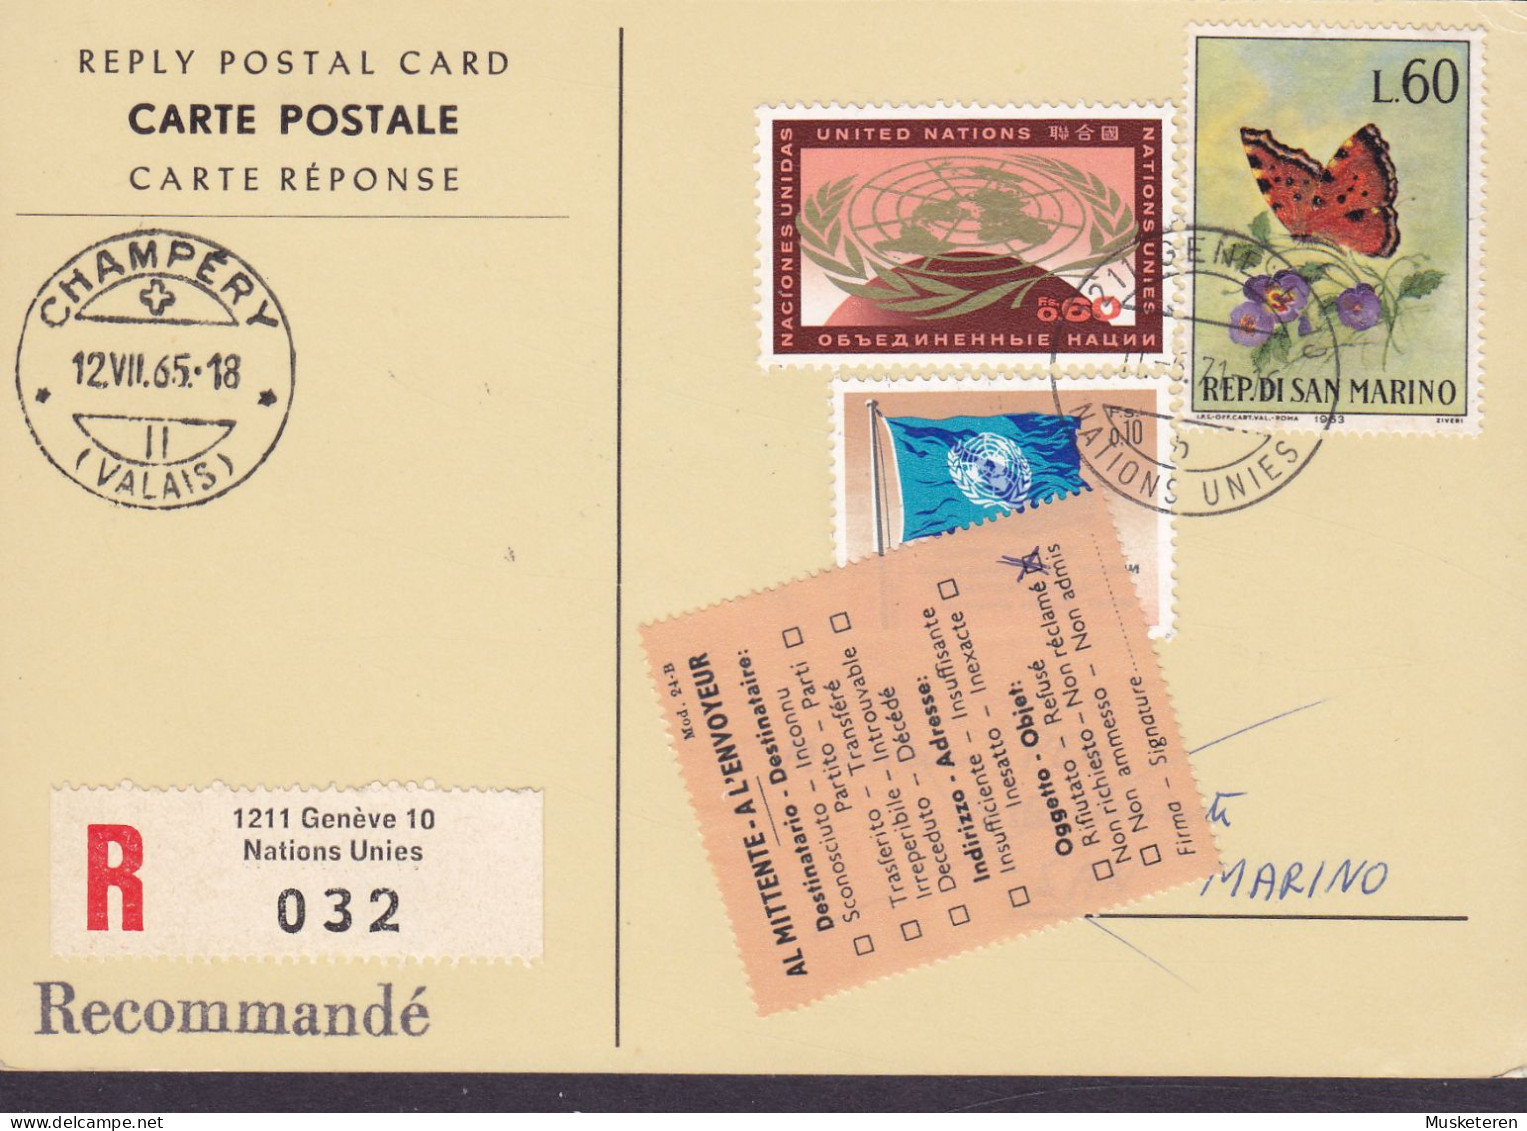 United Nations Reply Postal Card Recommandé Label GENÉVE 1971 SAN MARINO 'Non Réclamé' Vignette Butterfly Papillon - Briefe U. Dokumente